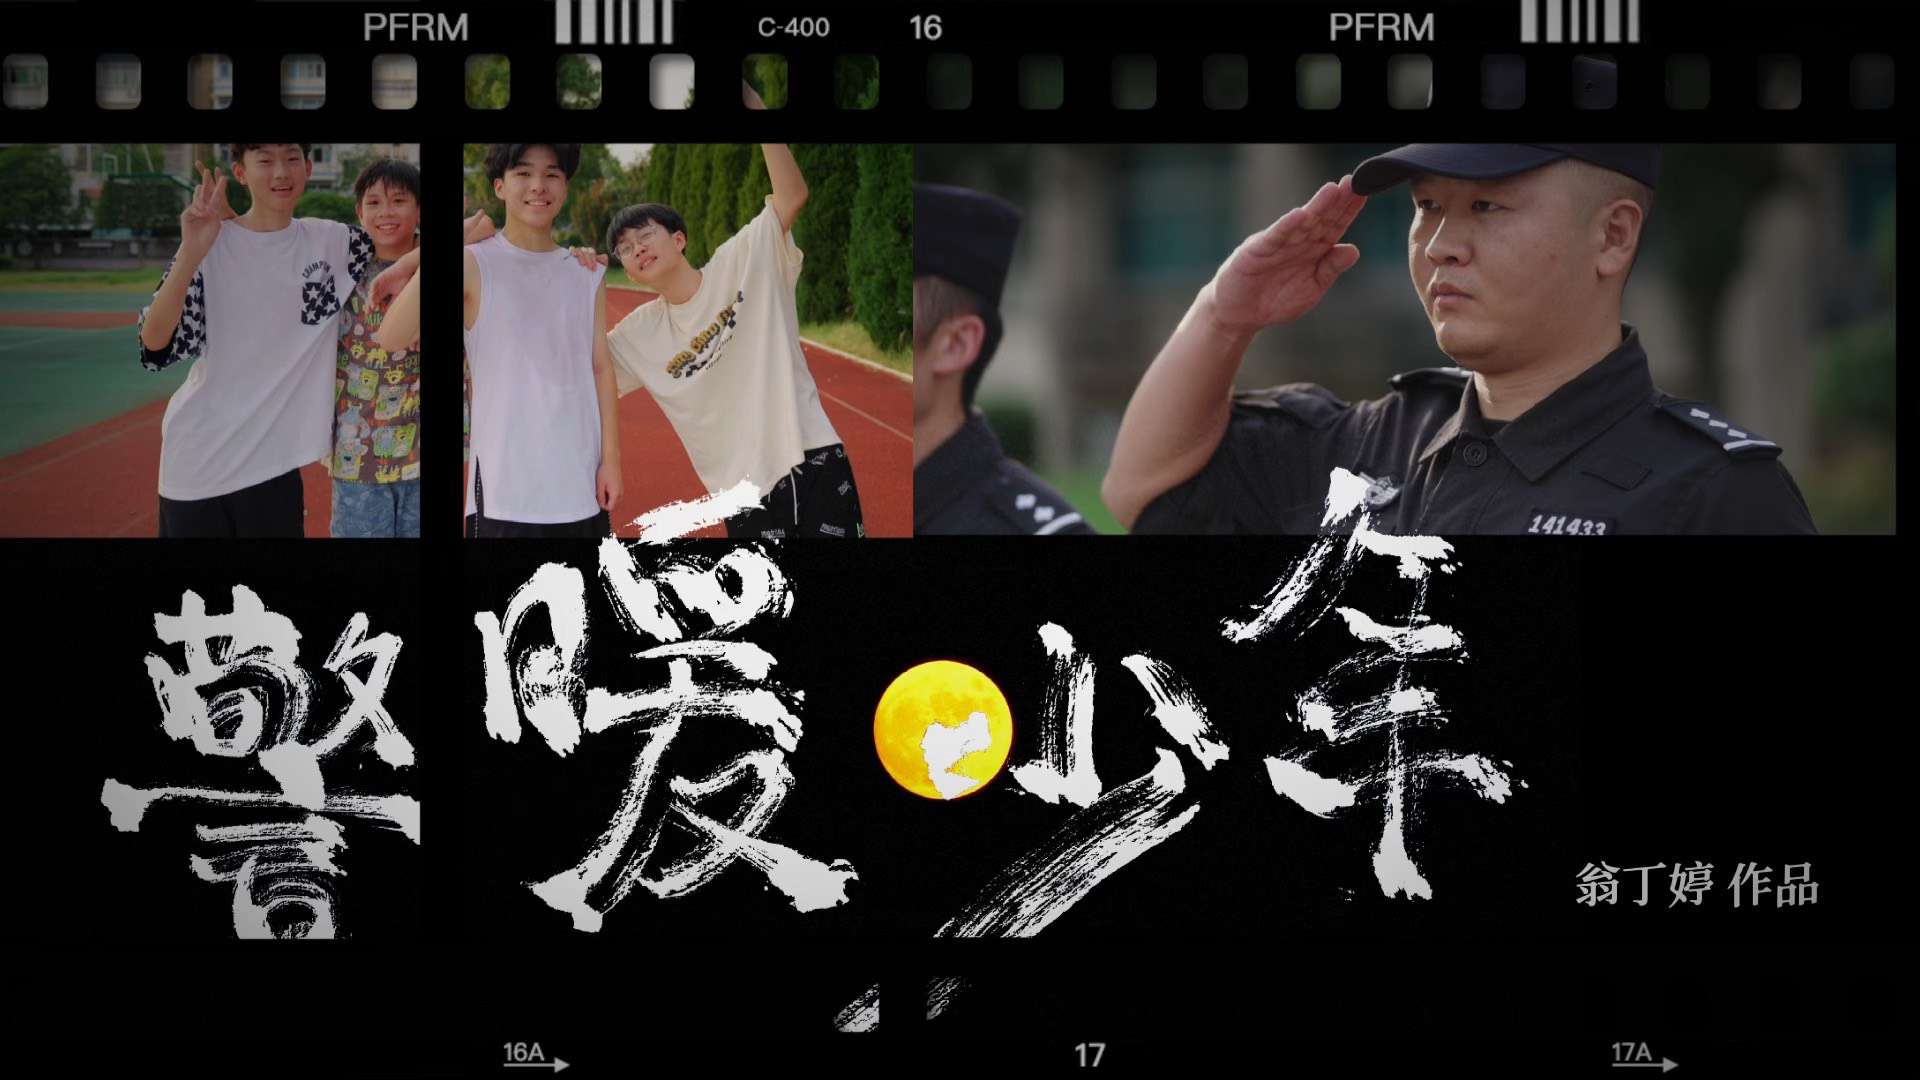 【致敬中国警察】获奖作品《警暖少年》警察帮助边缘少年